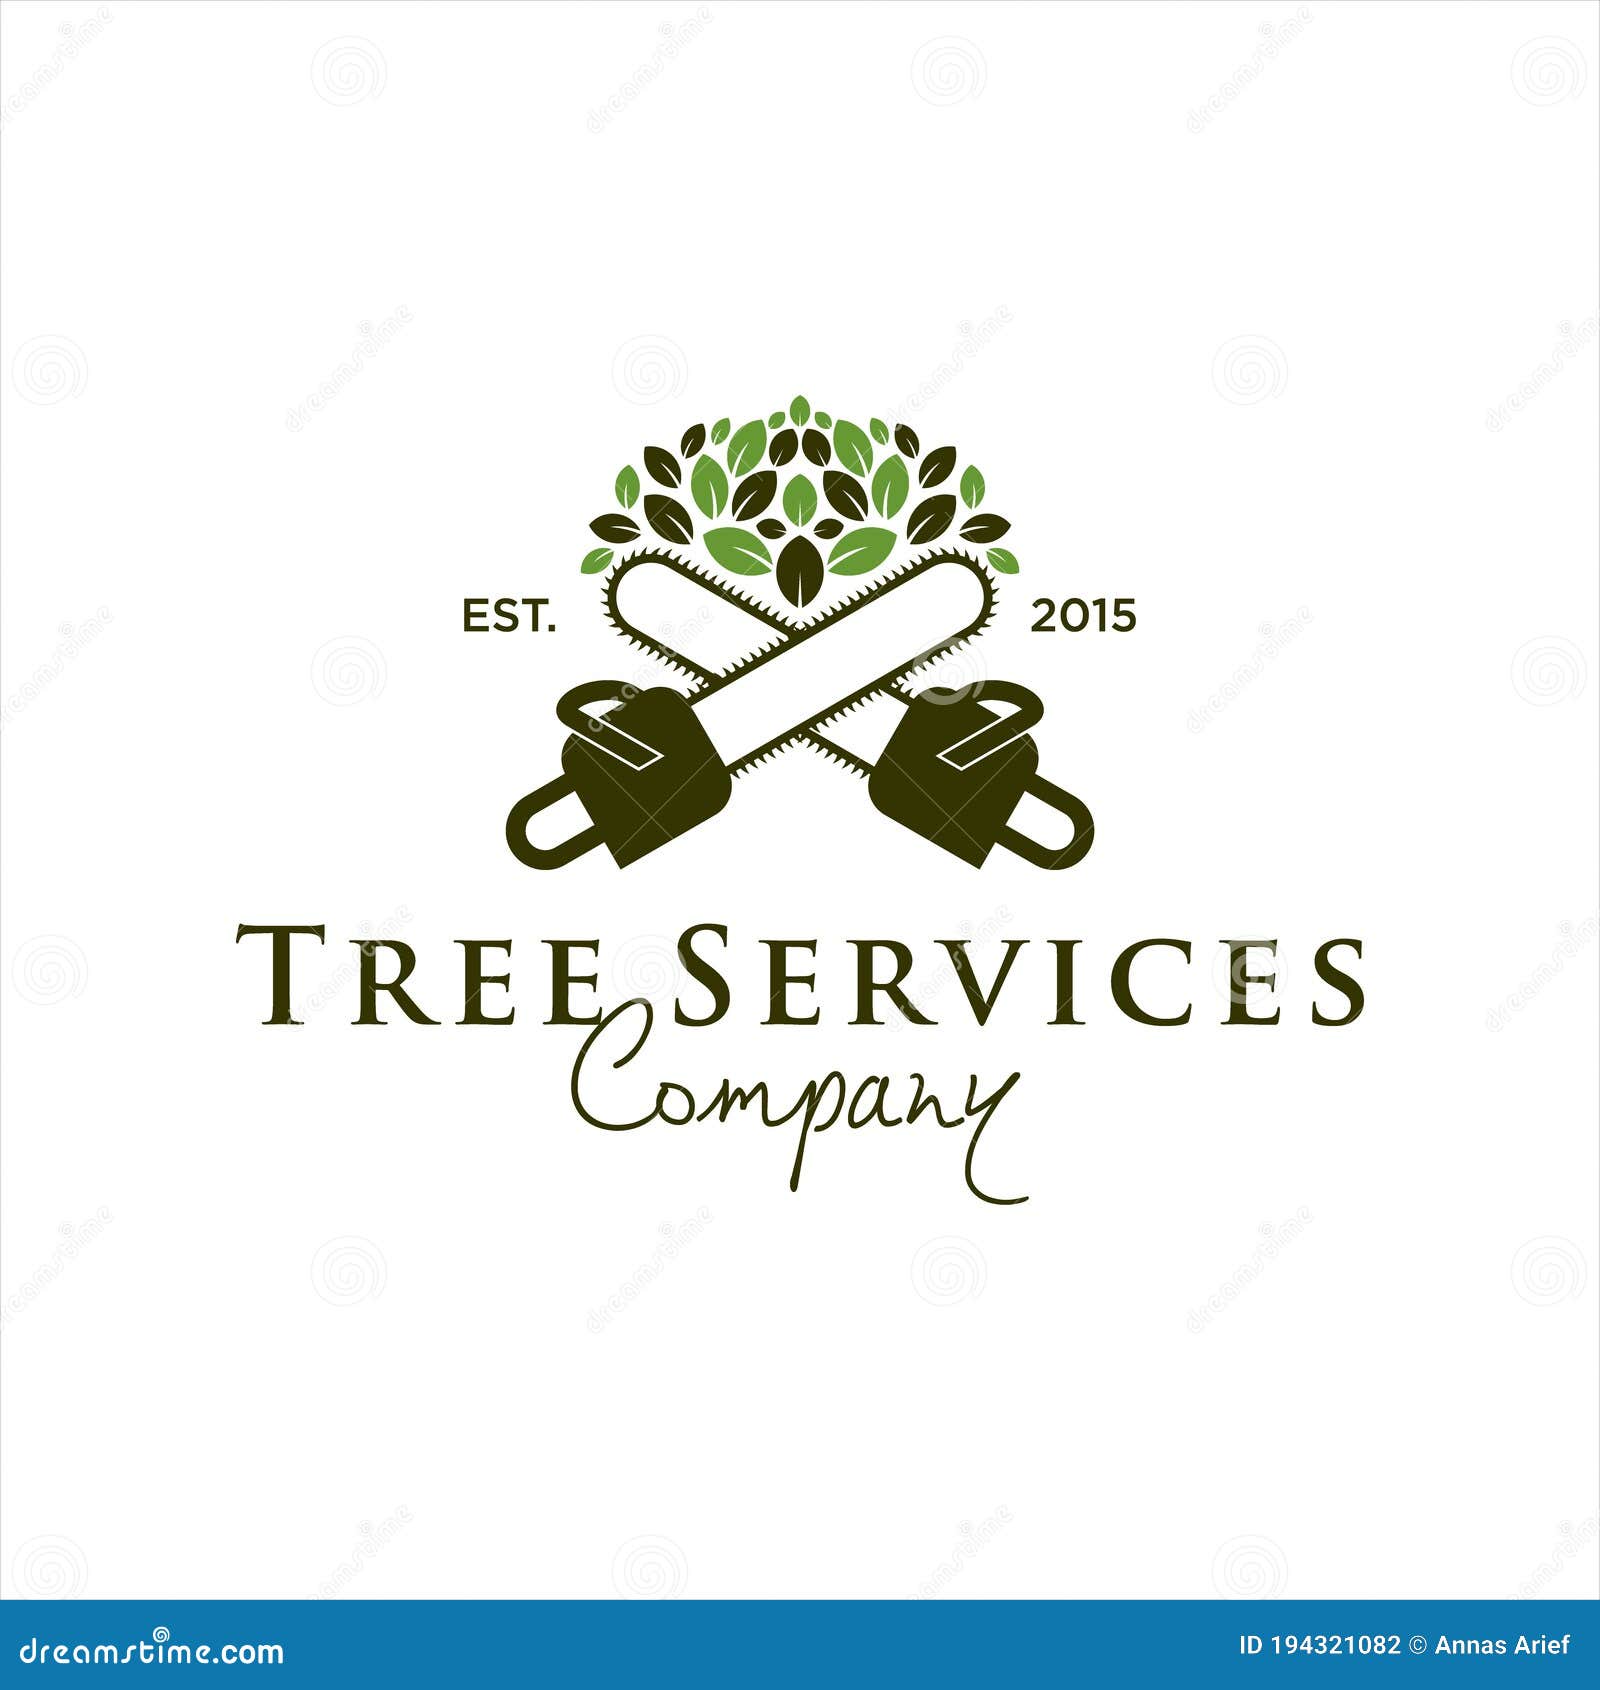 tree service logo ideas 3